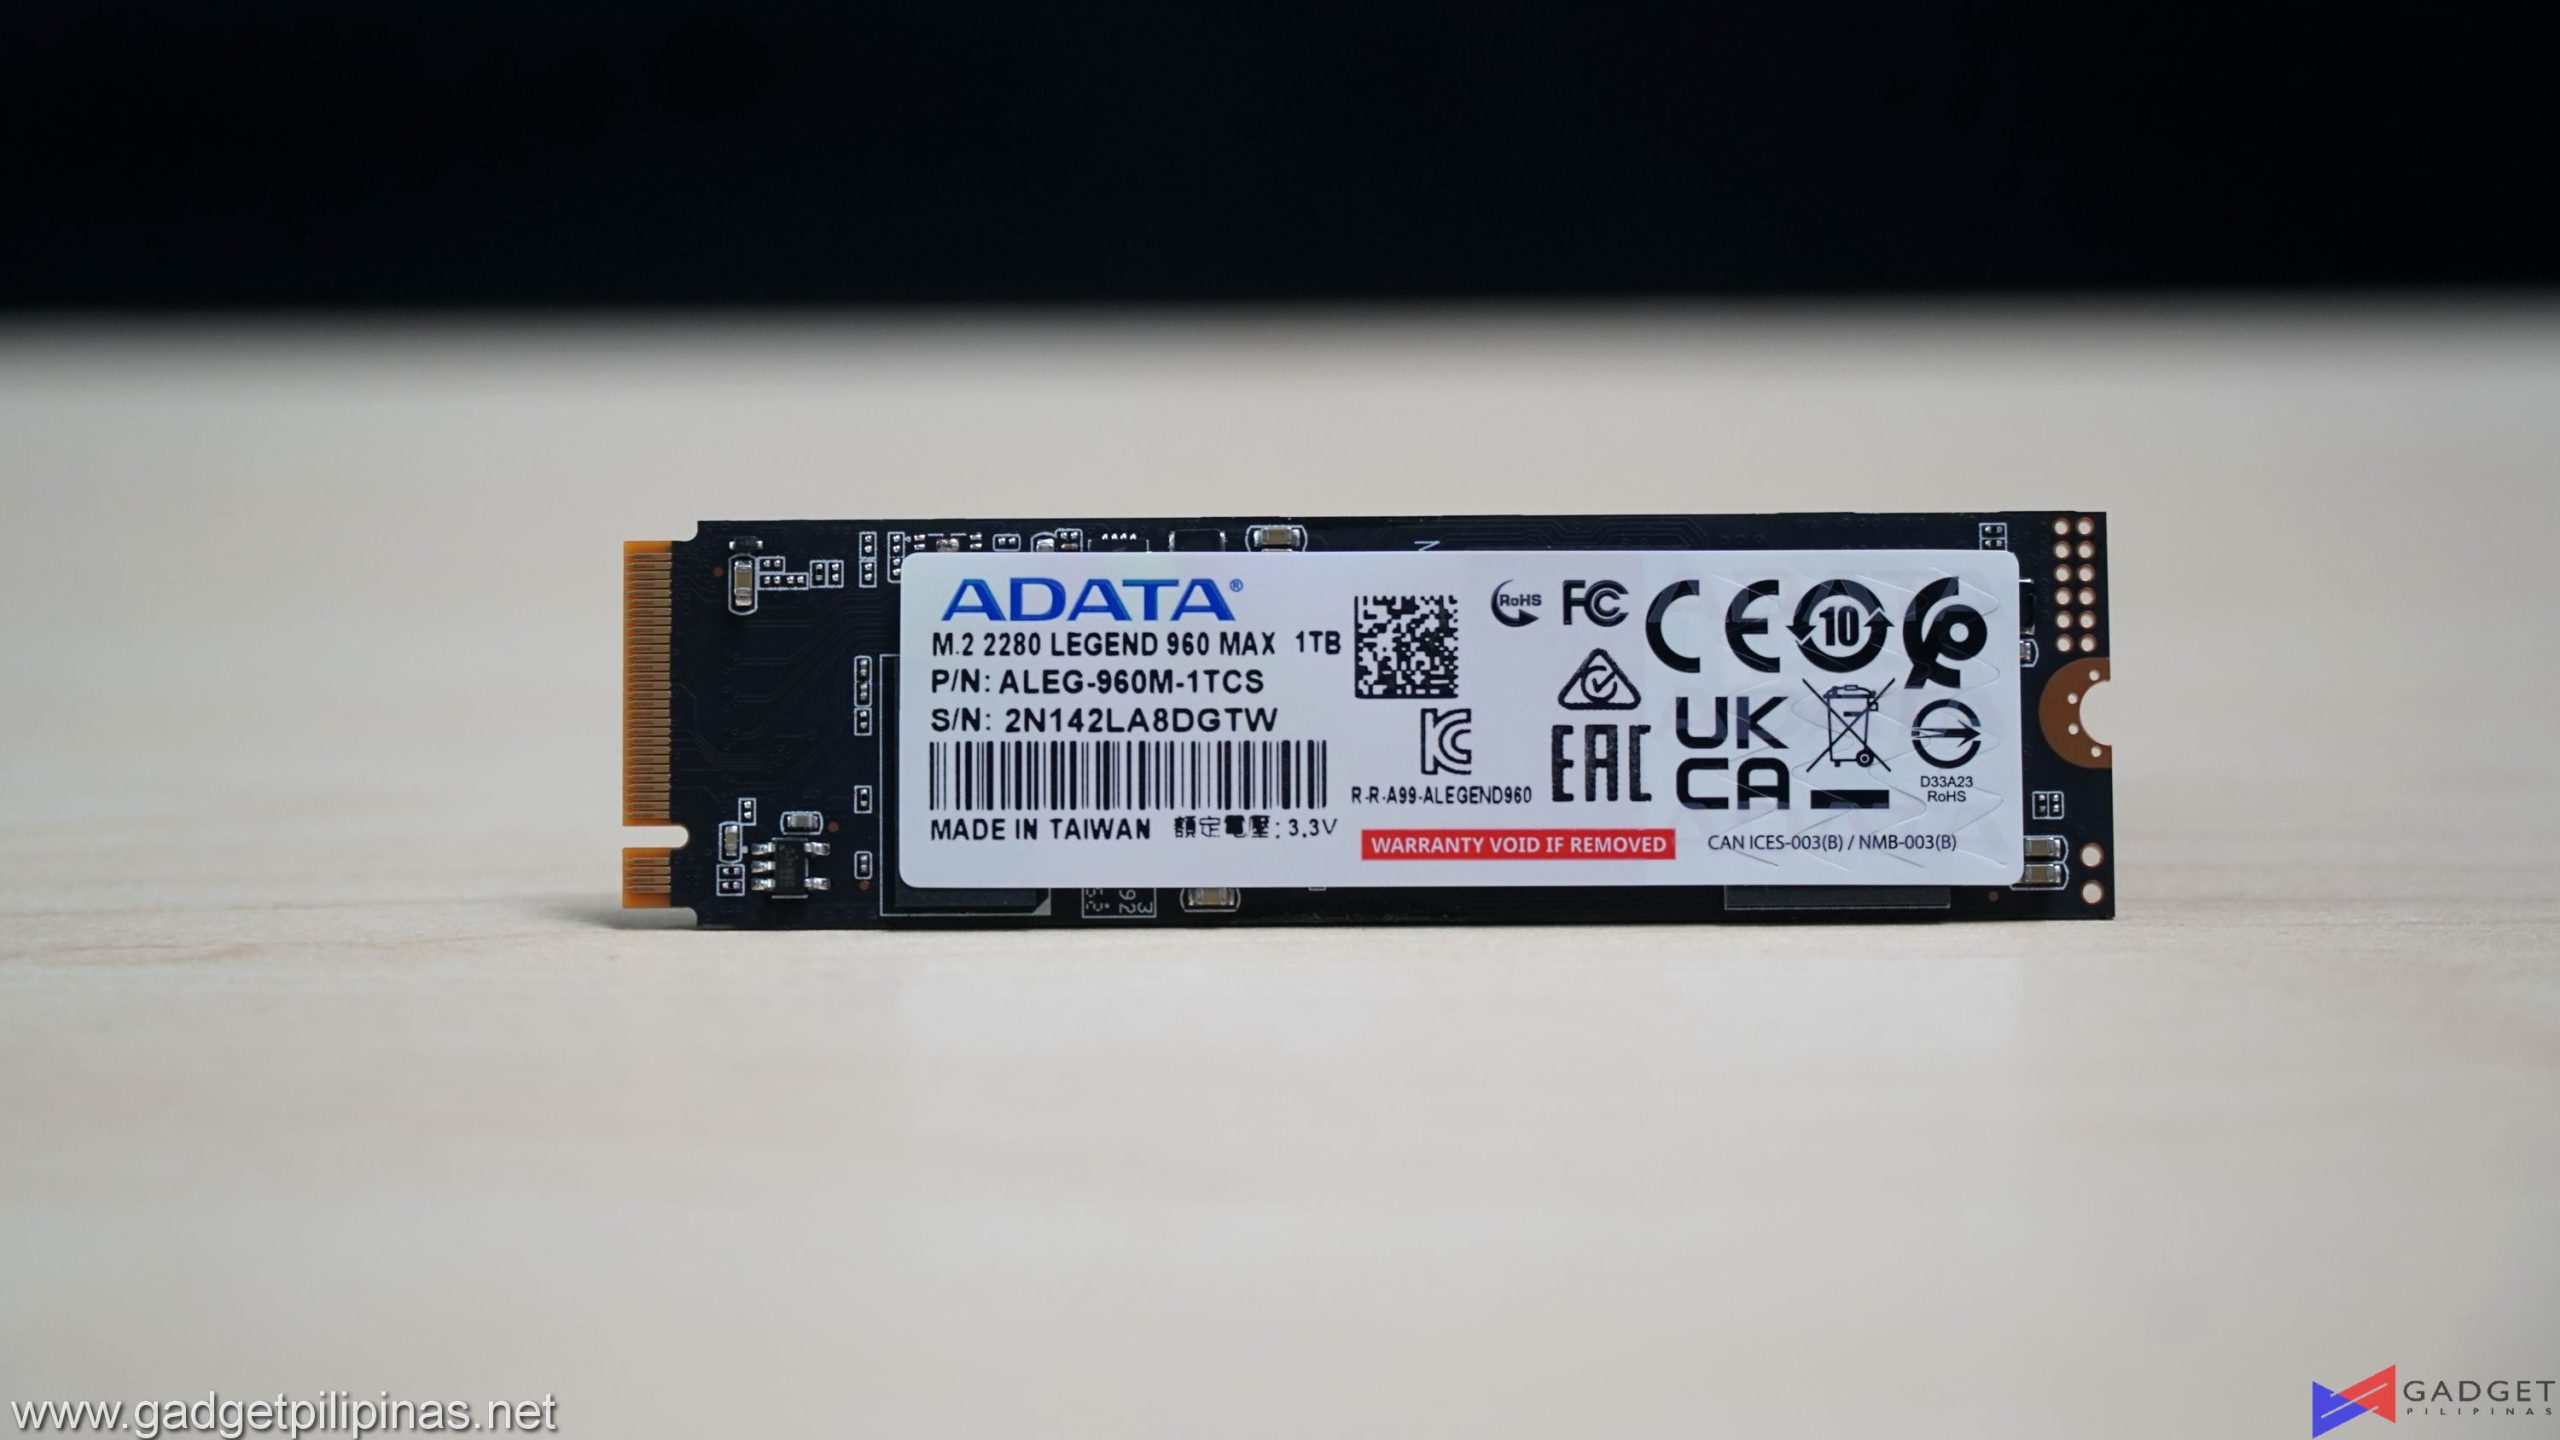 ADATA Legend 960 Max 1TB SSD Review 016